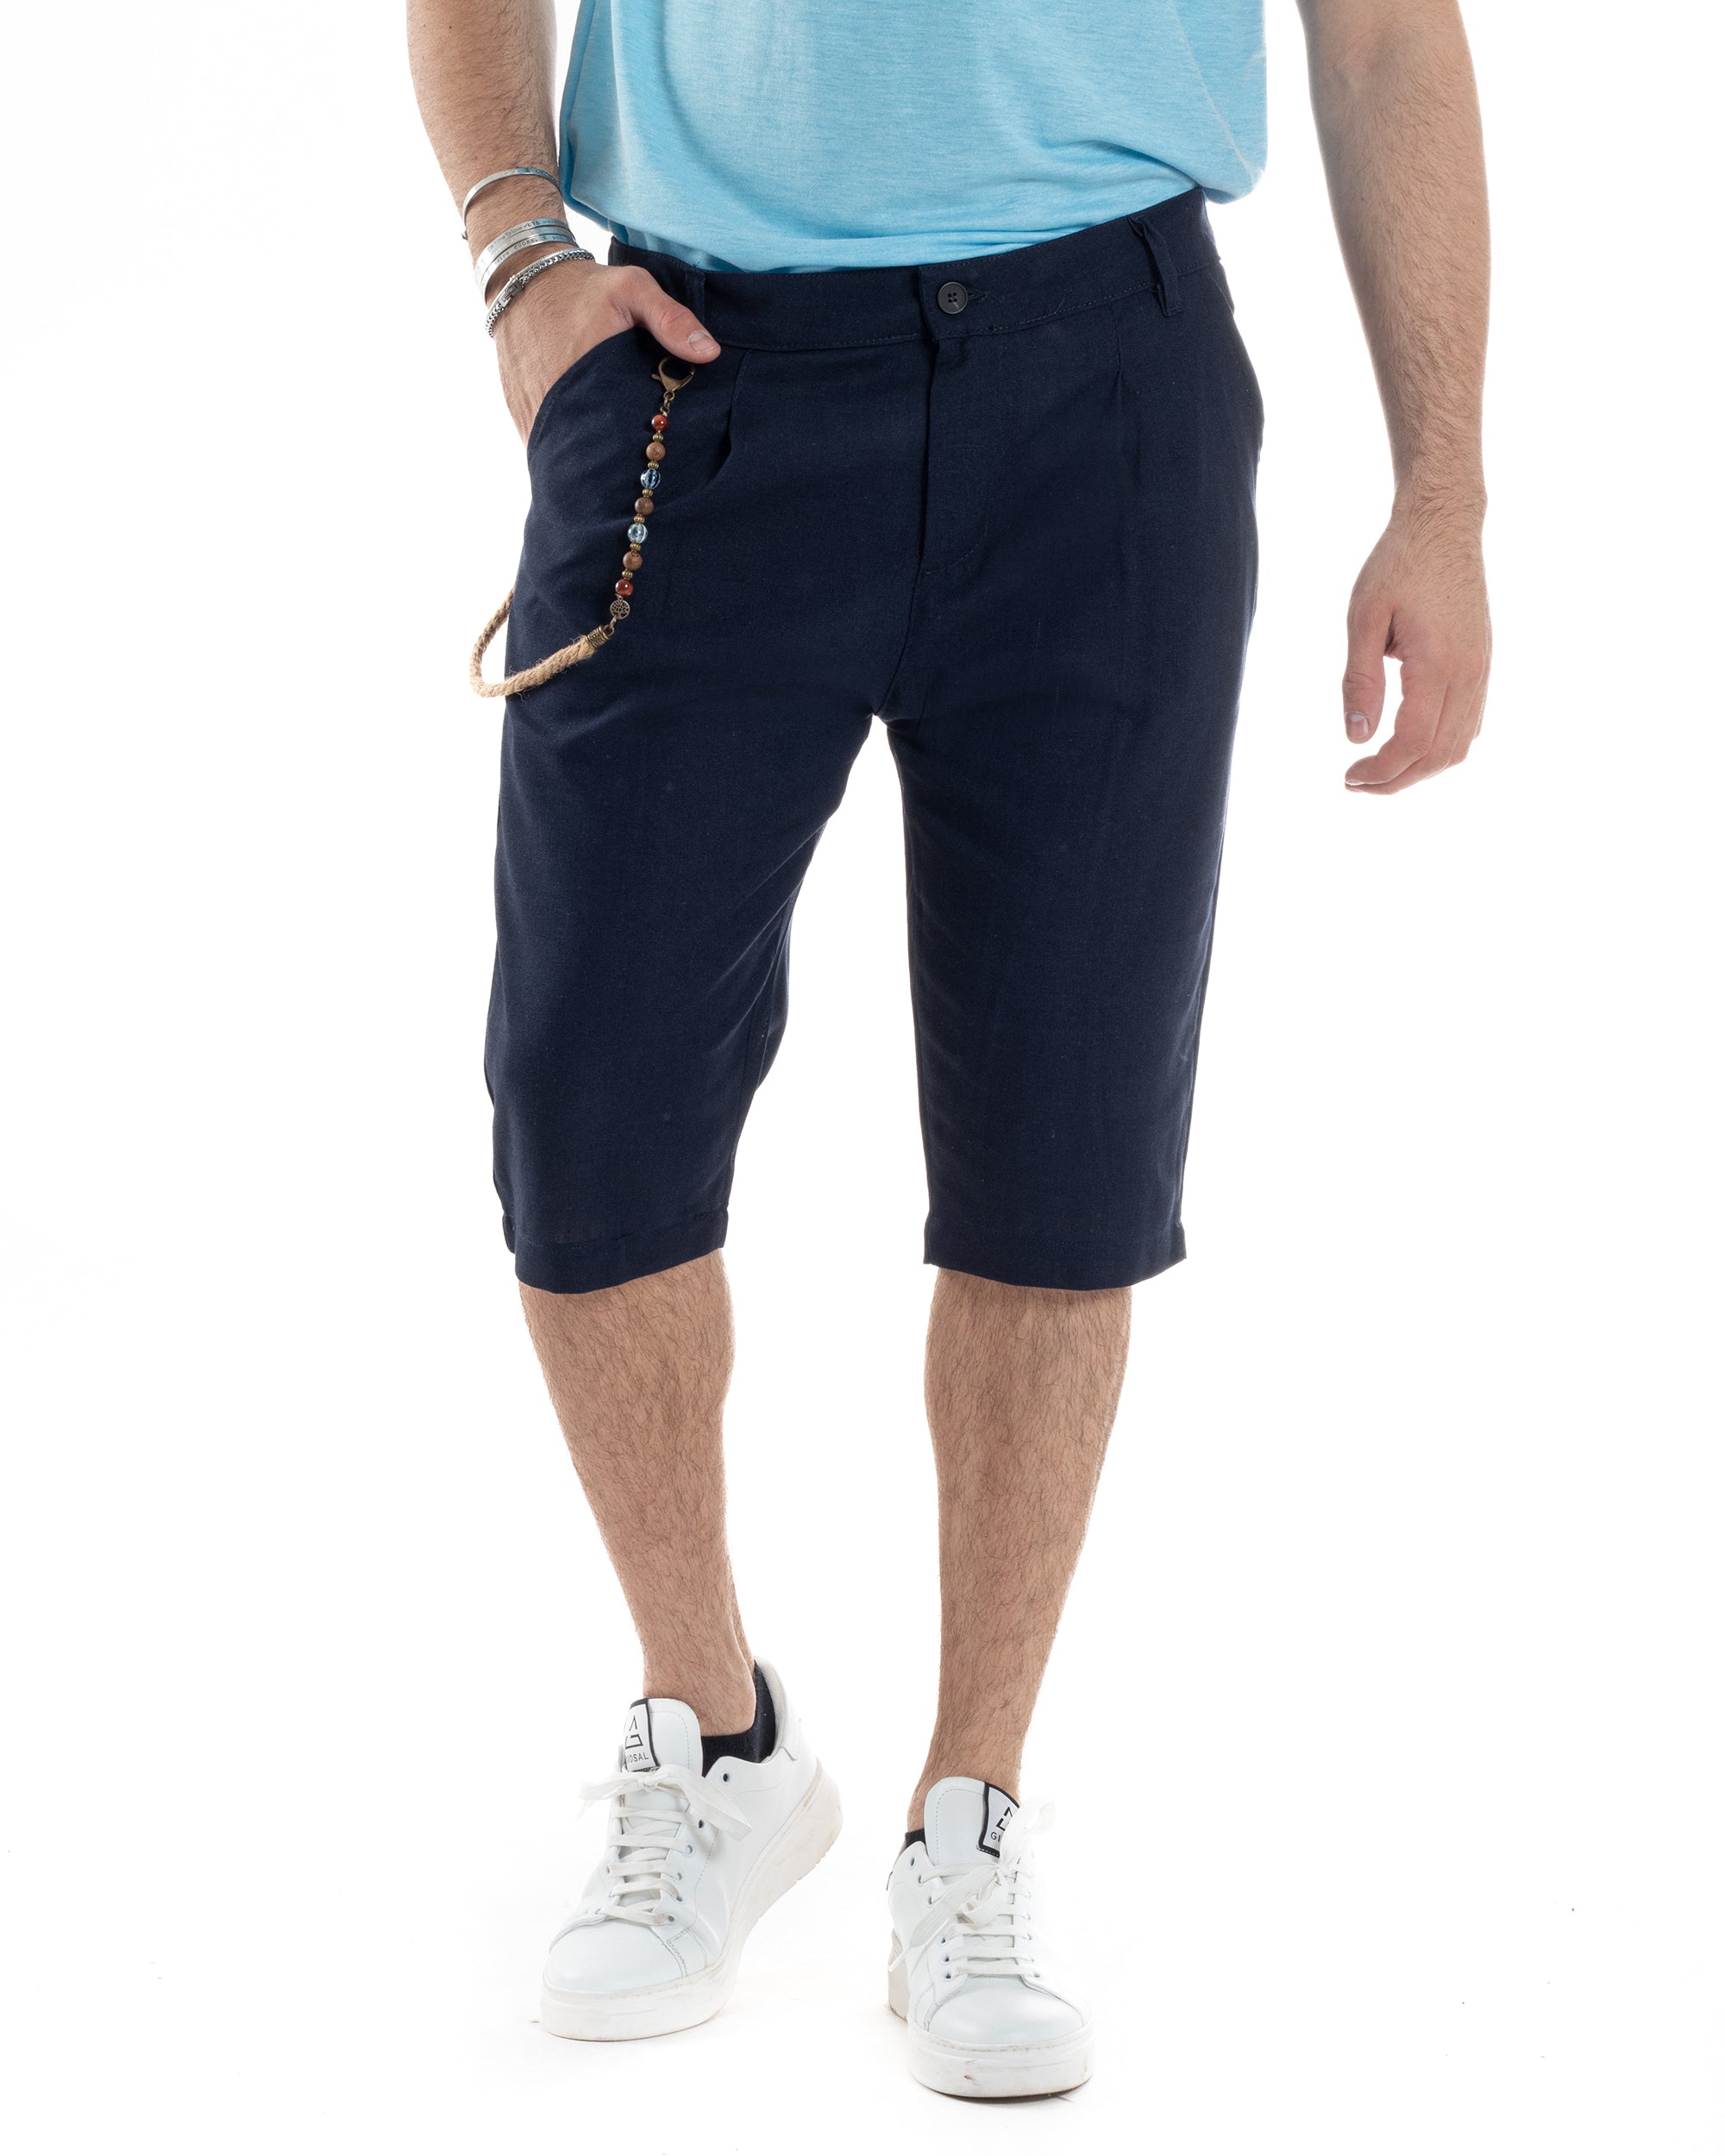 Bermuda Pantaloncino Uomo Corto Lino Tasca America Classico Sartoriale Comodo Casual Tinta Unita Blu GIOSAL-PC1951A